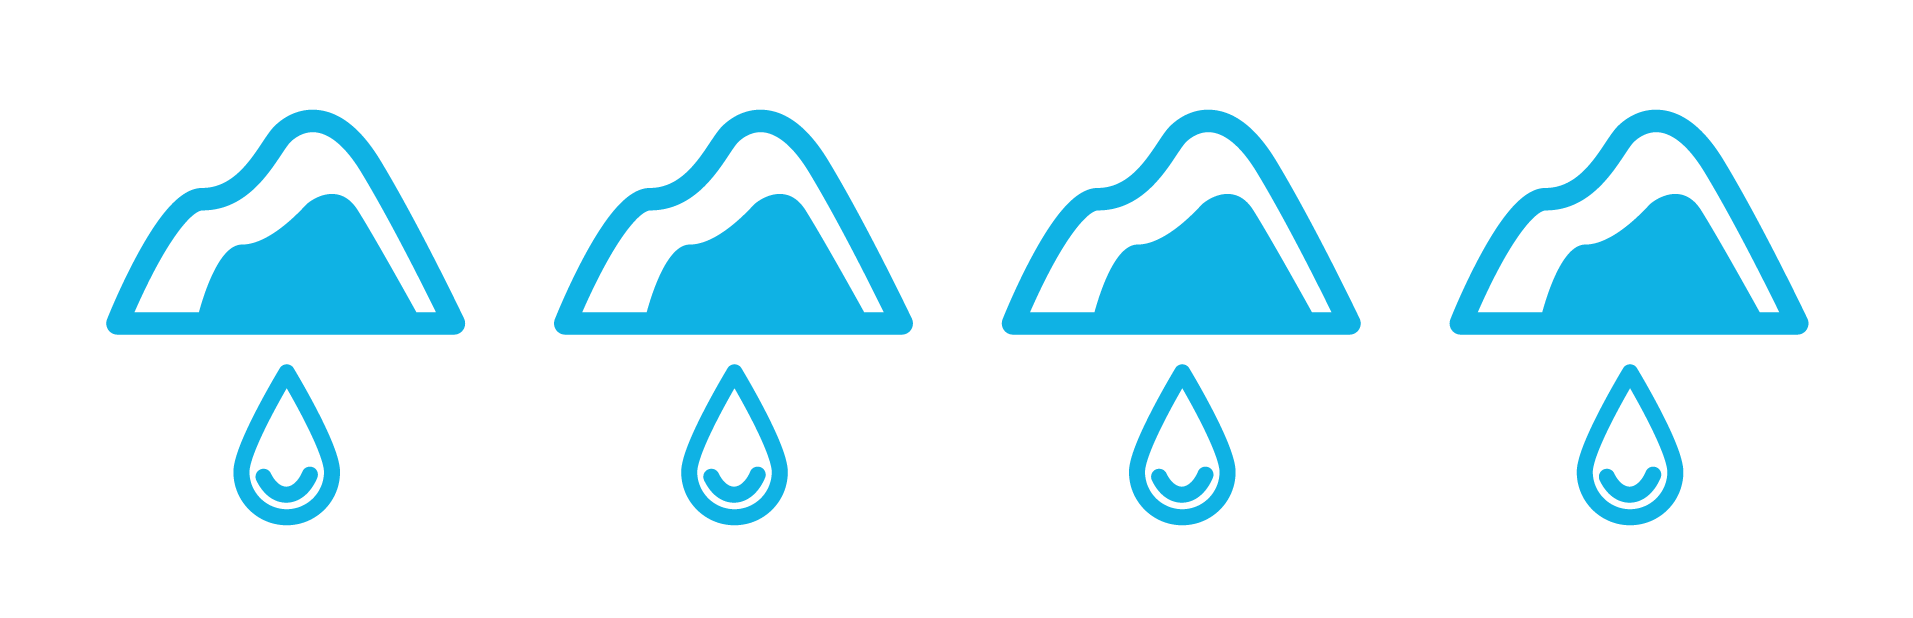 Four melting iceberg icons